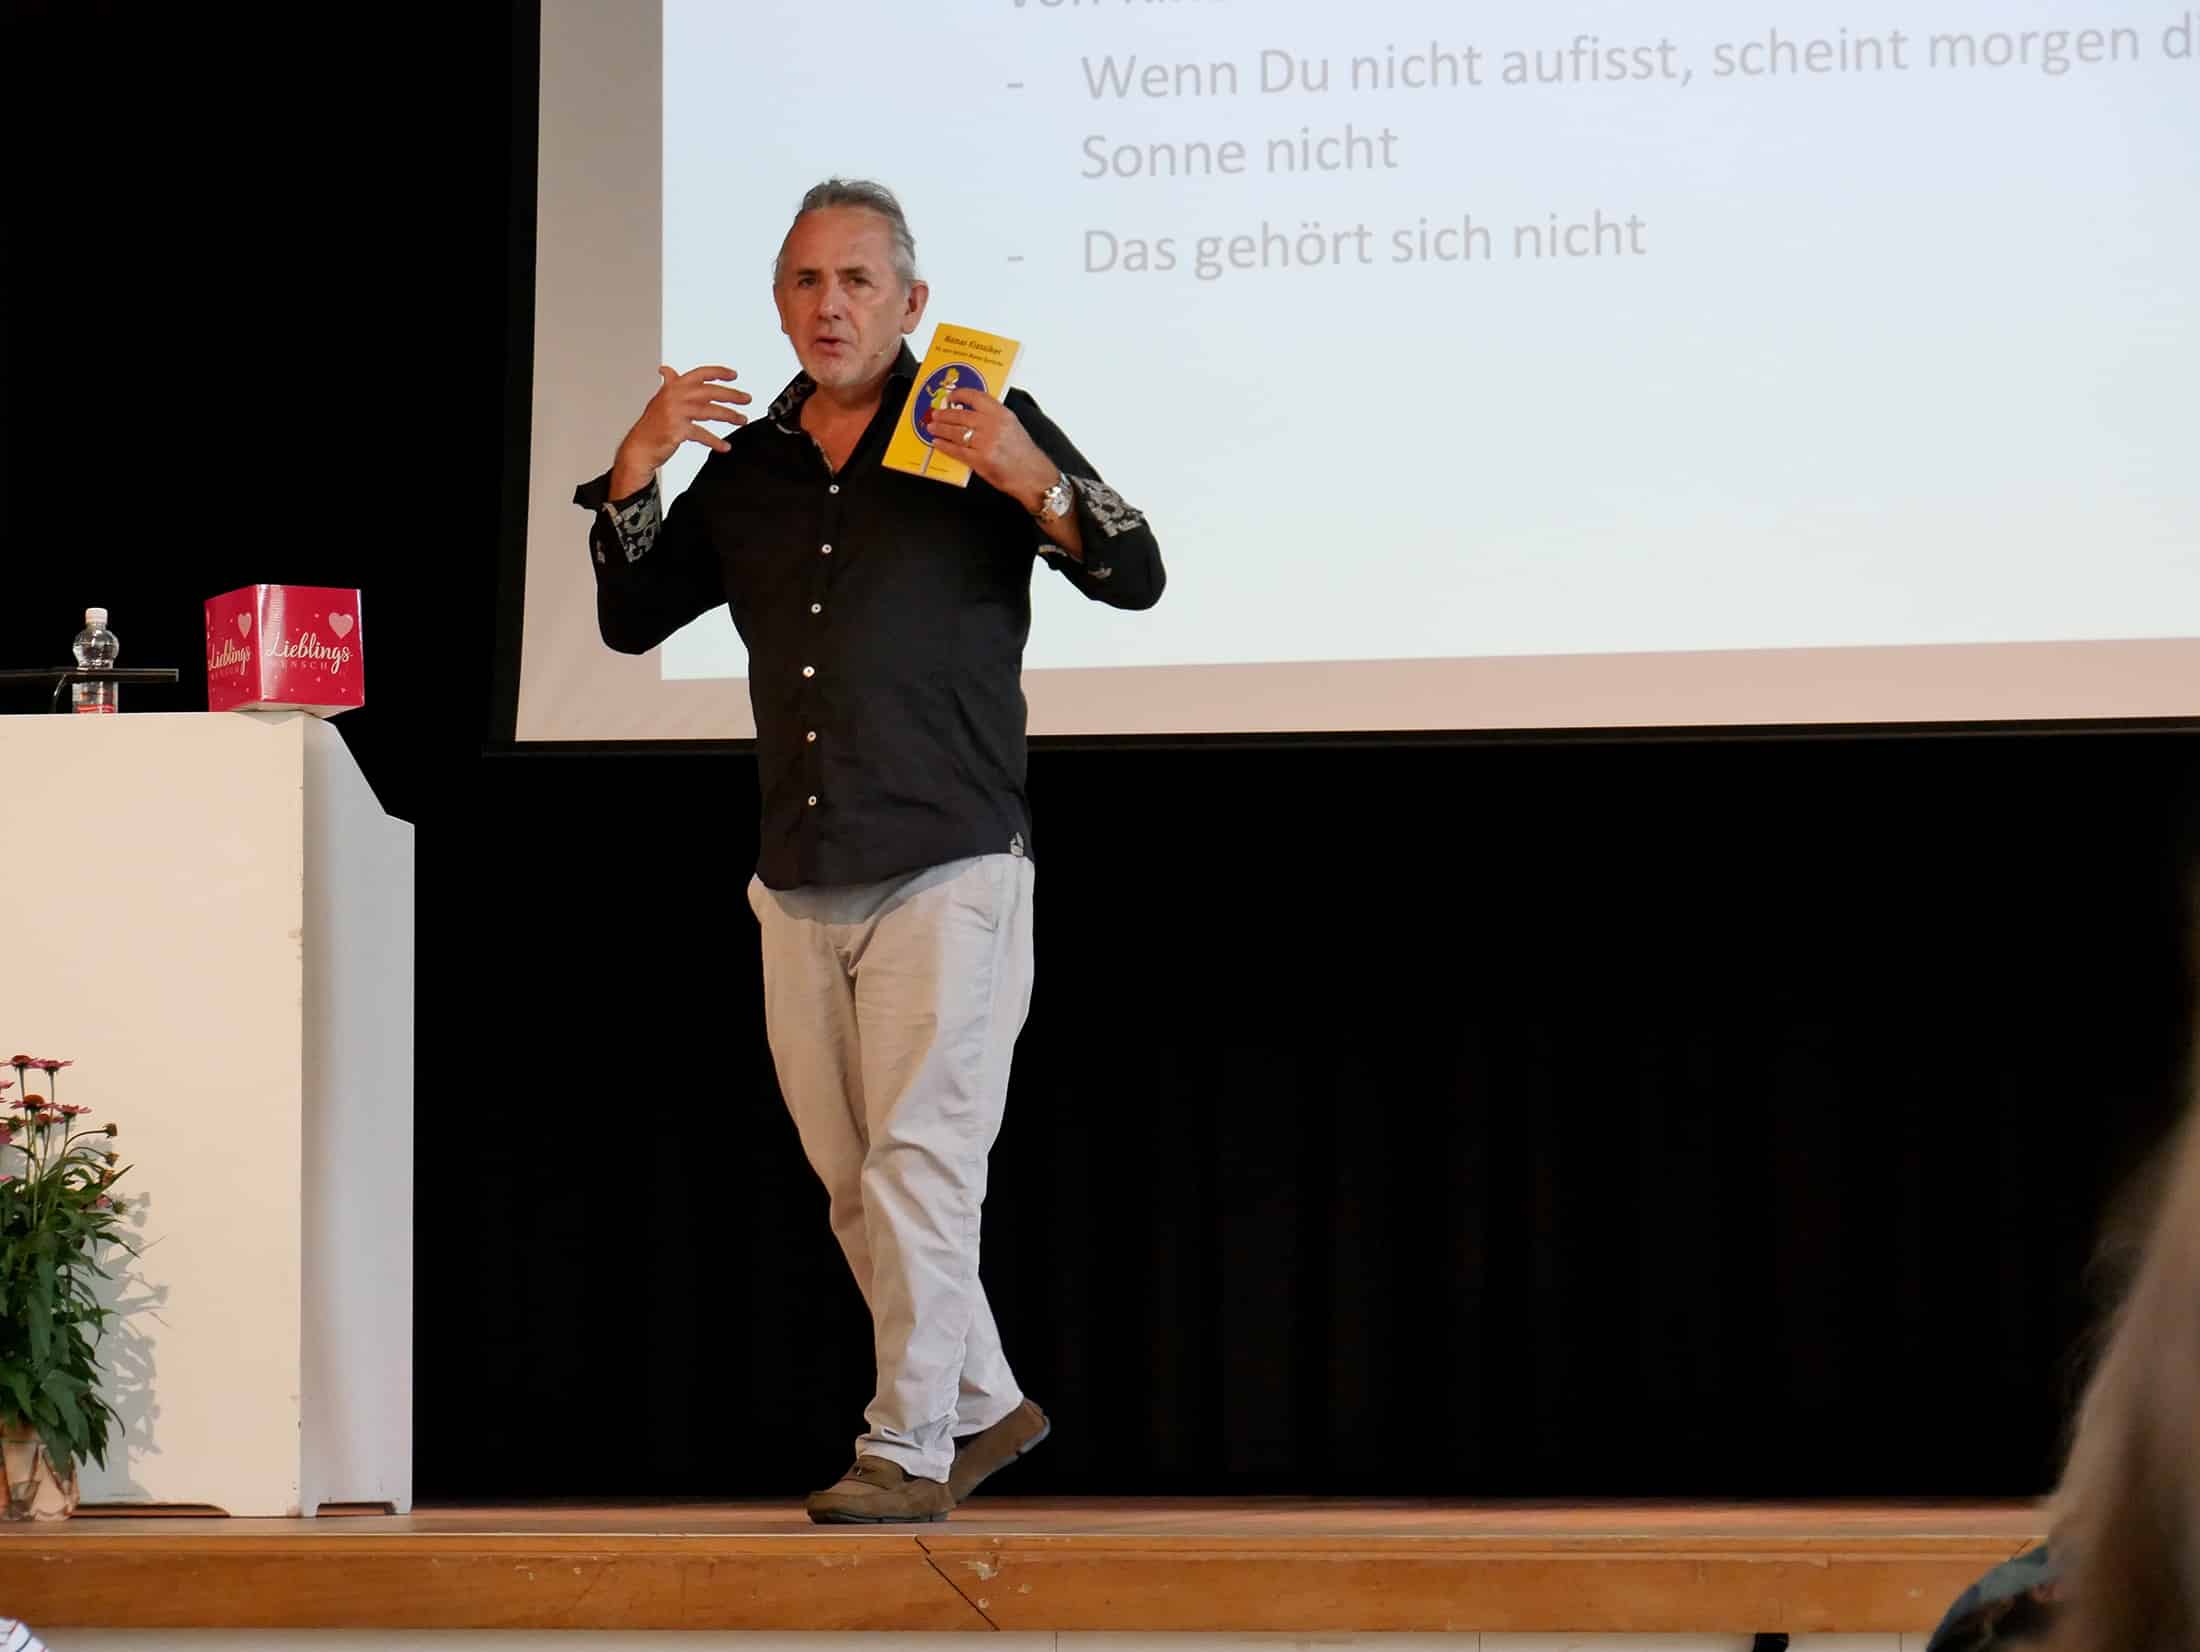 Urs R. Bärtschi Seminartrainer